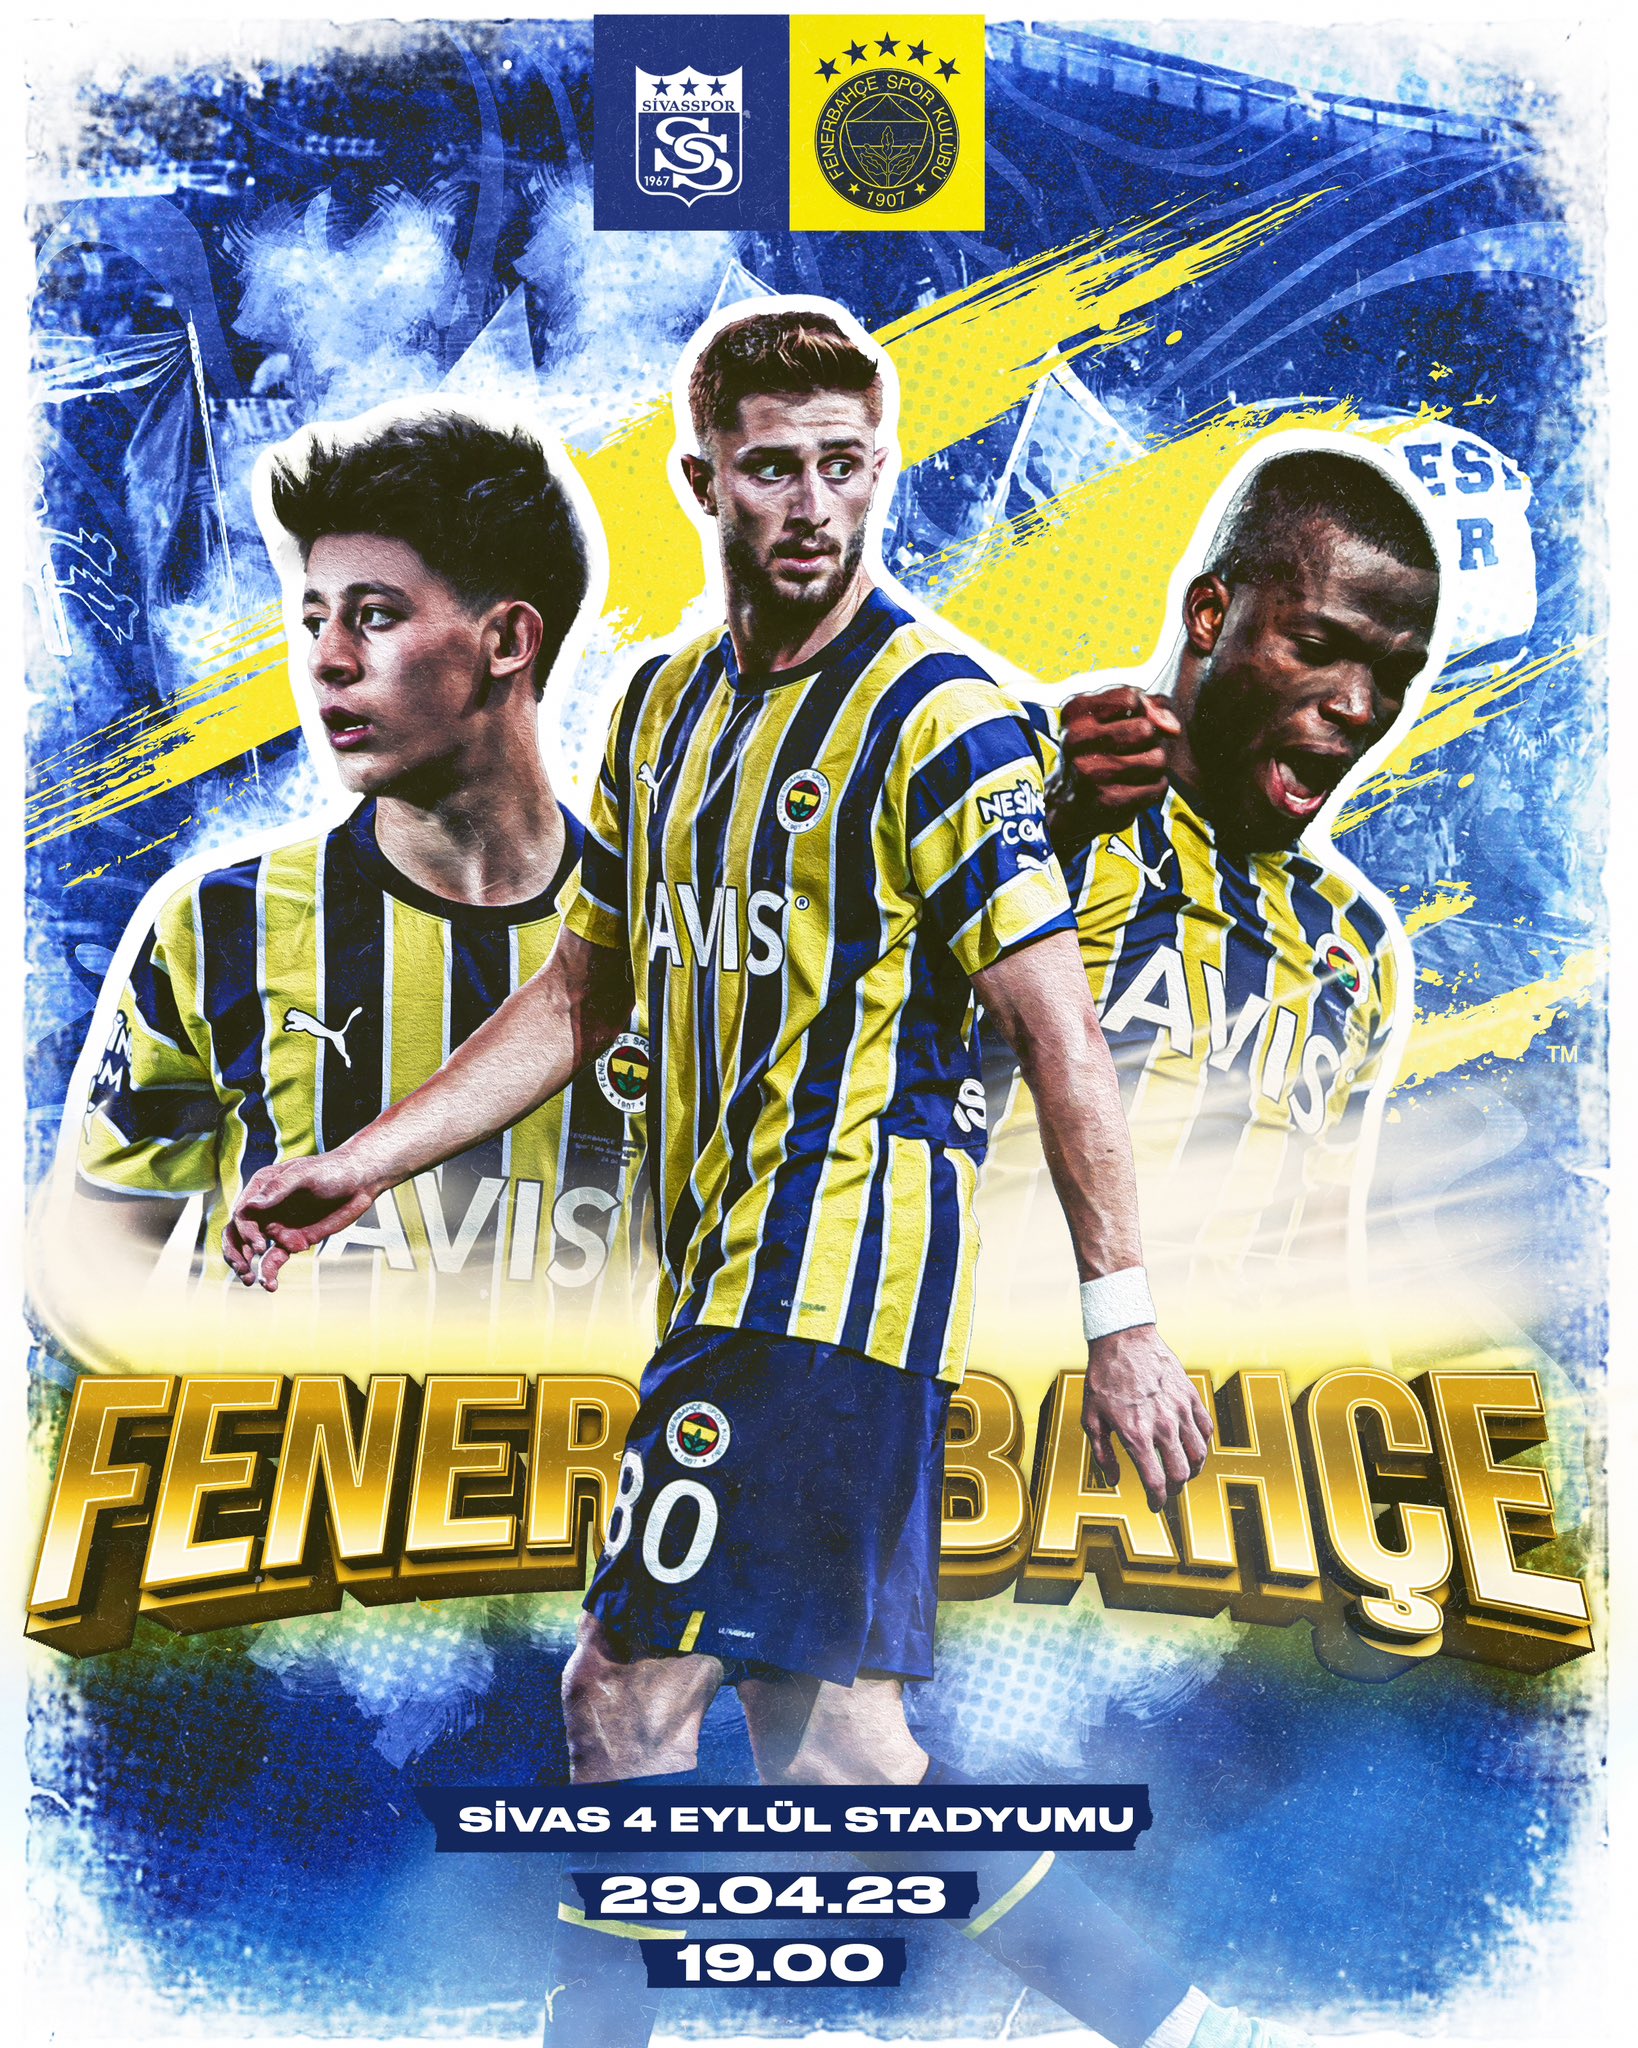 Fenerbahçe vs Karagümrük: A Clash of Istanbul Titans